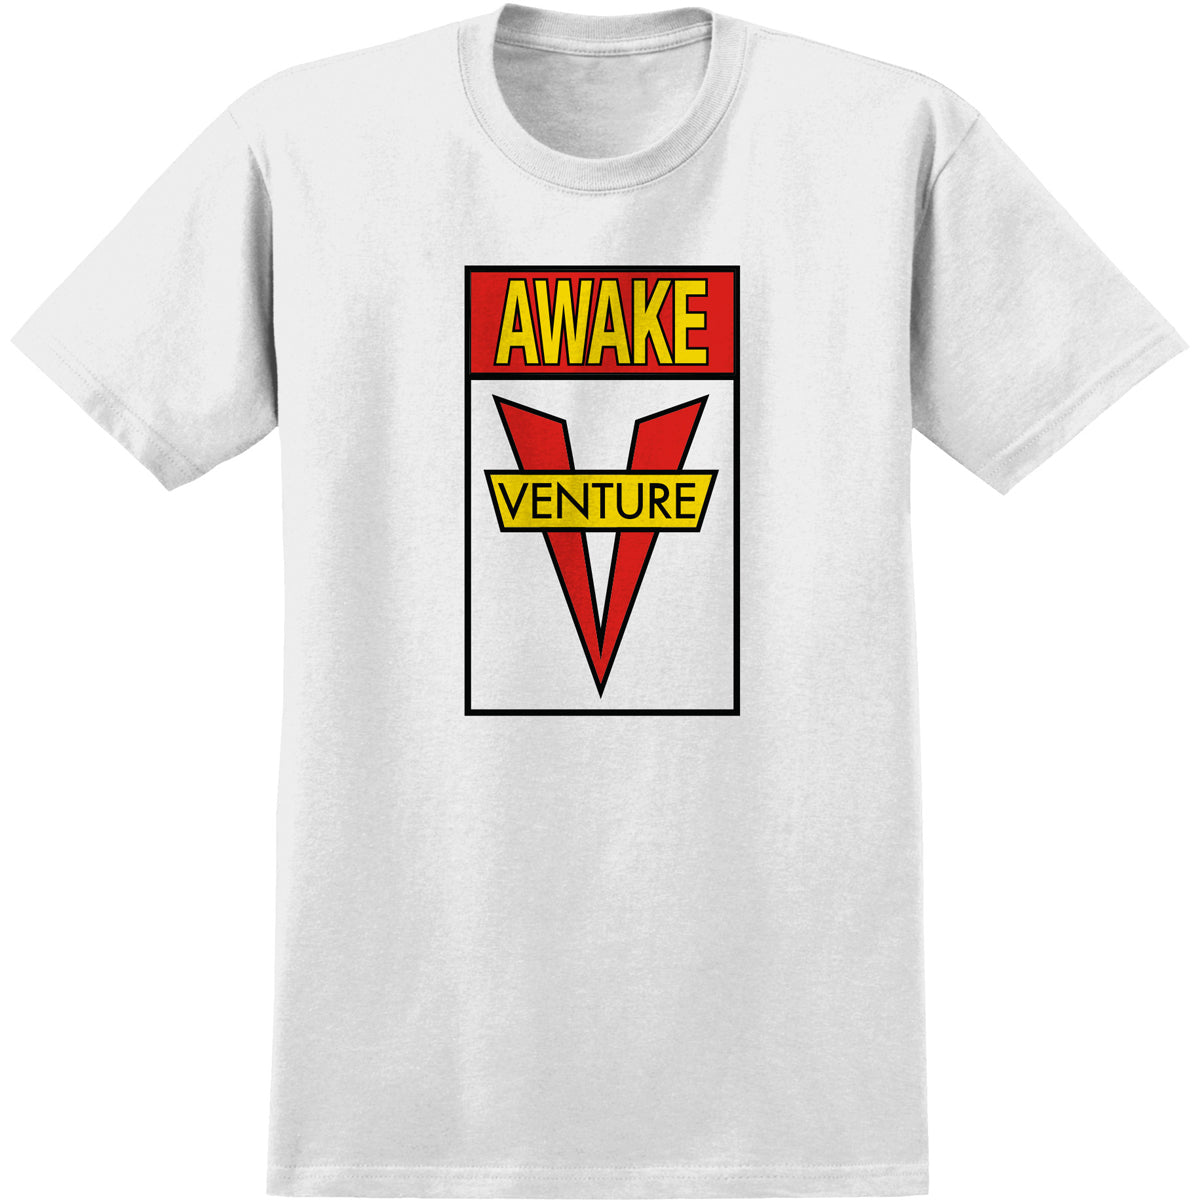 Venture Awake Tee White/Red/Yellow